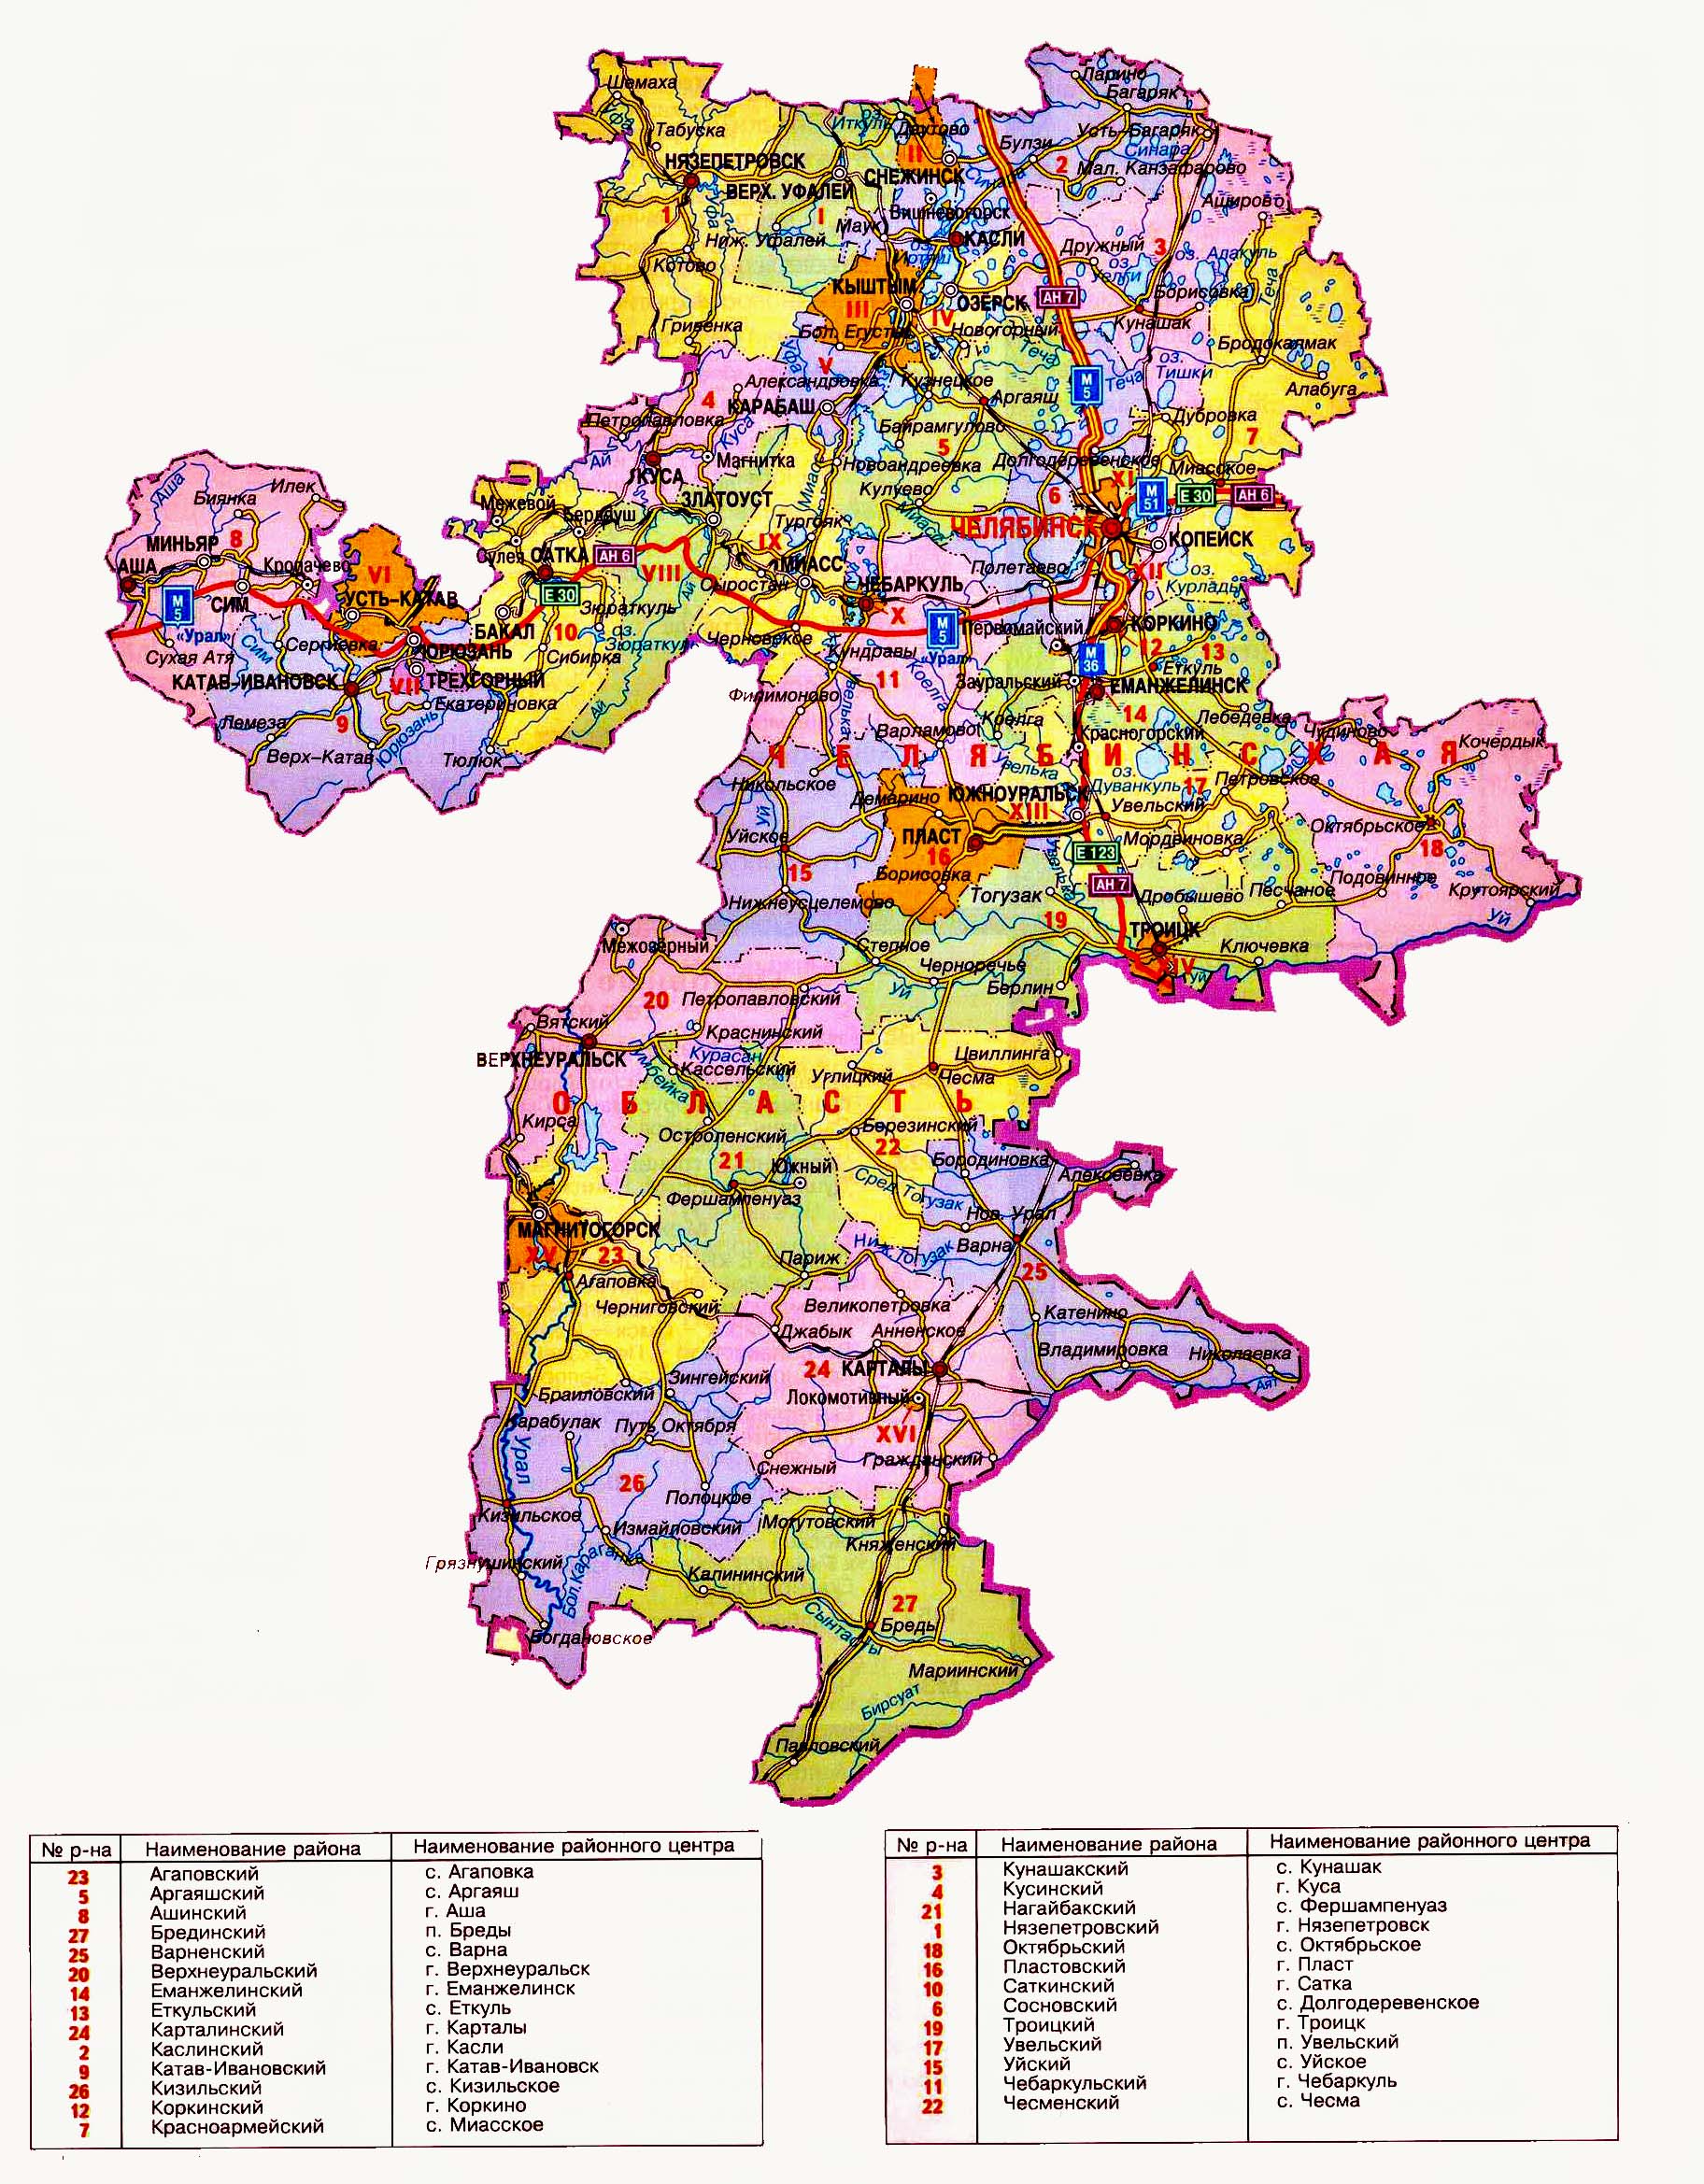 Необходимые пояснения по административно-территориальному делению Челябинской области